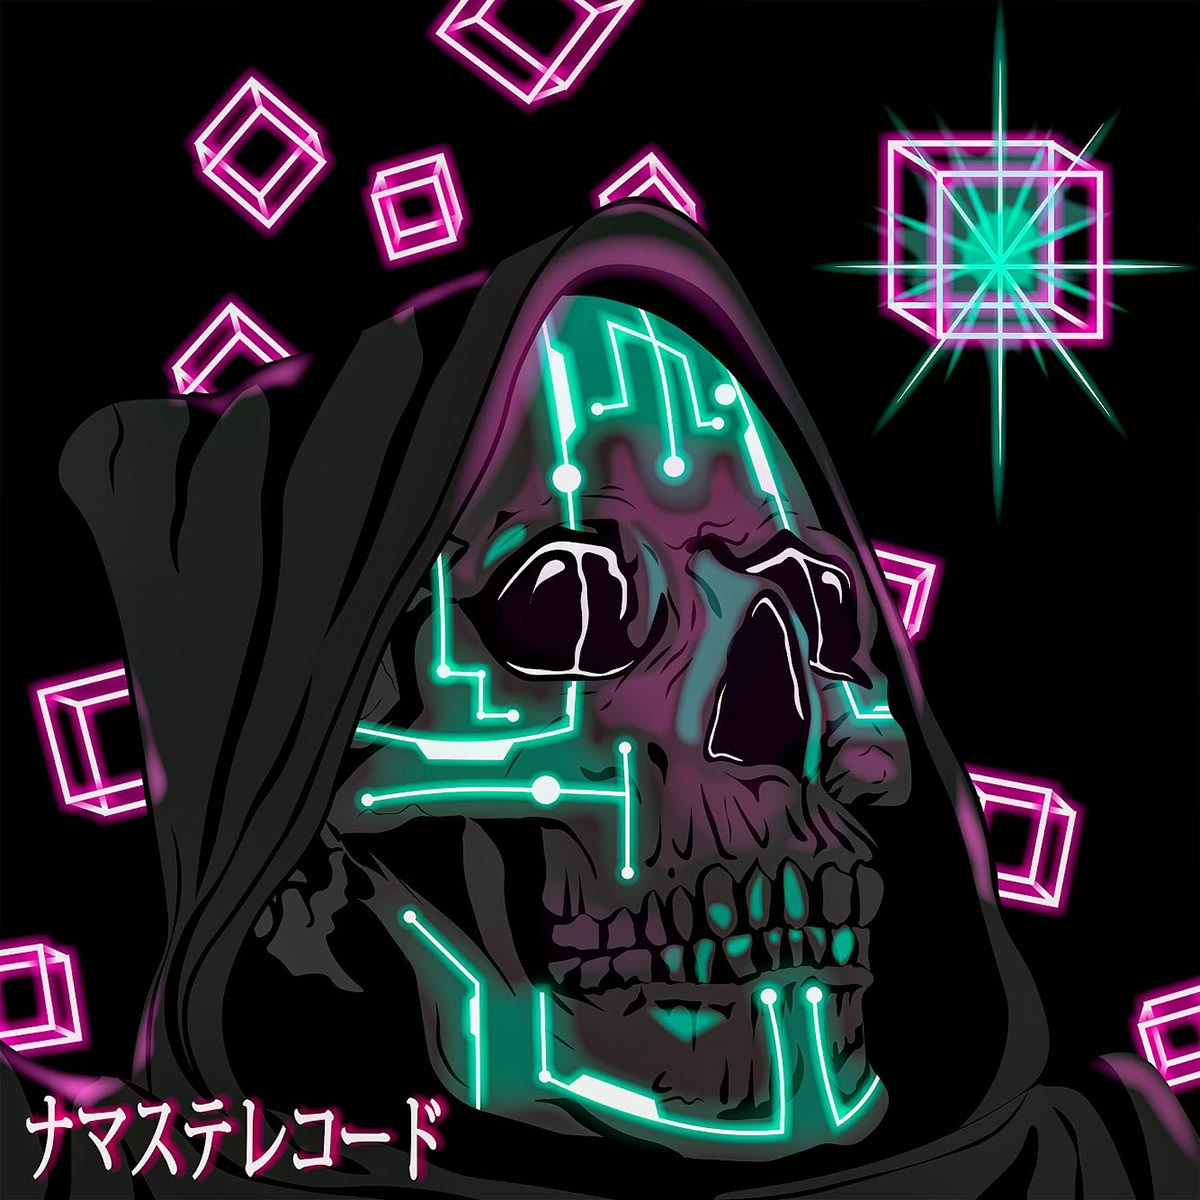 adobe adobe illustrator albumartwork Behance black cinema4d cover Cover Art cube cyber darks future ilustration neon skull